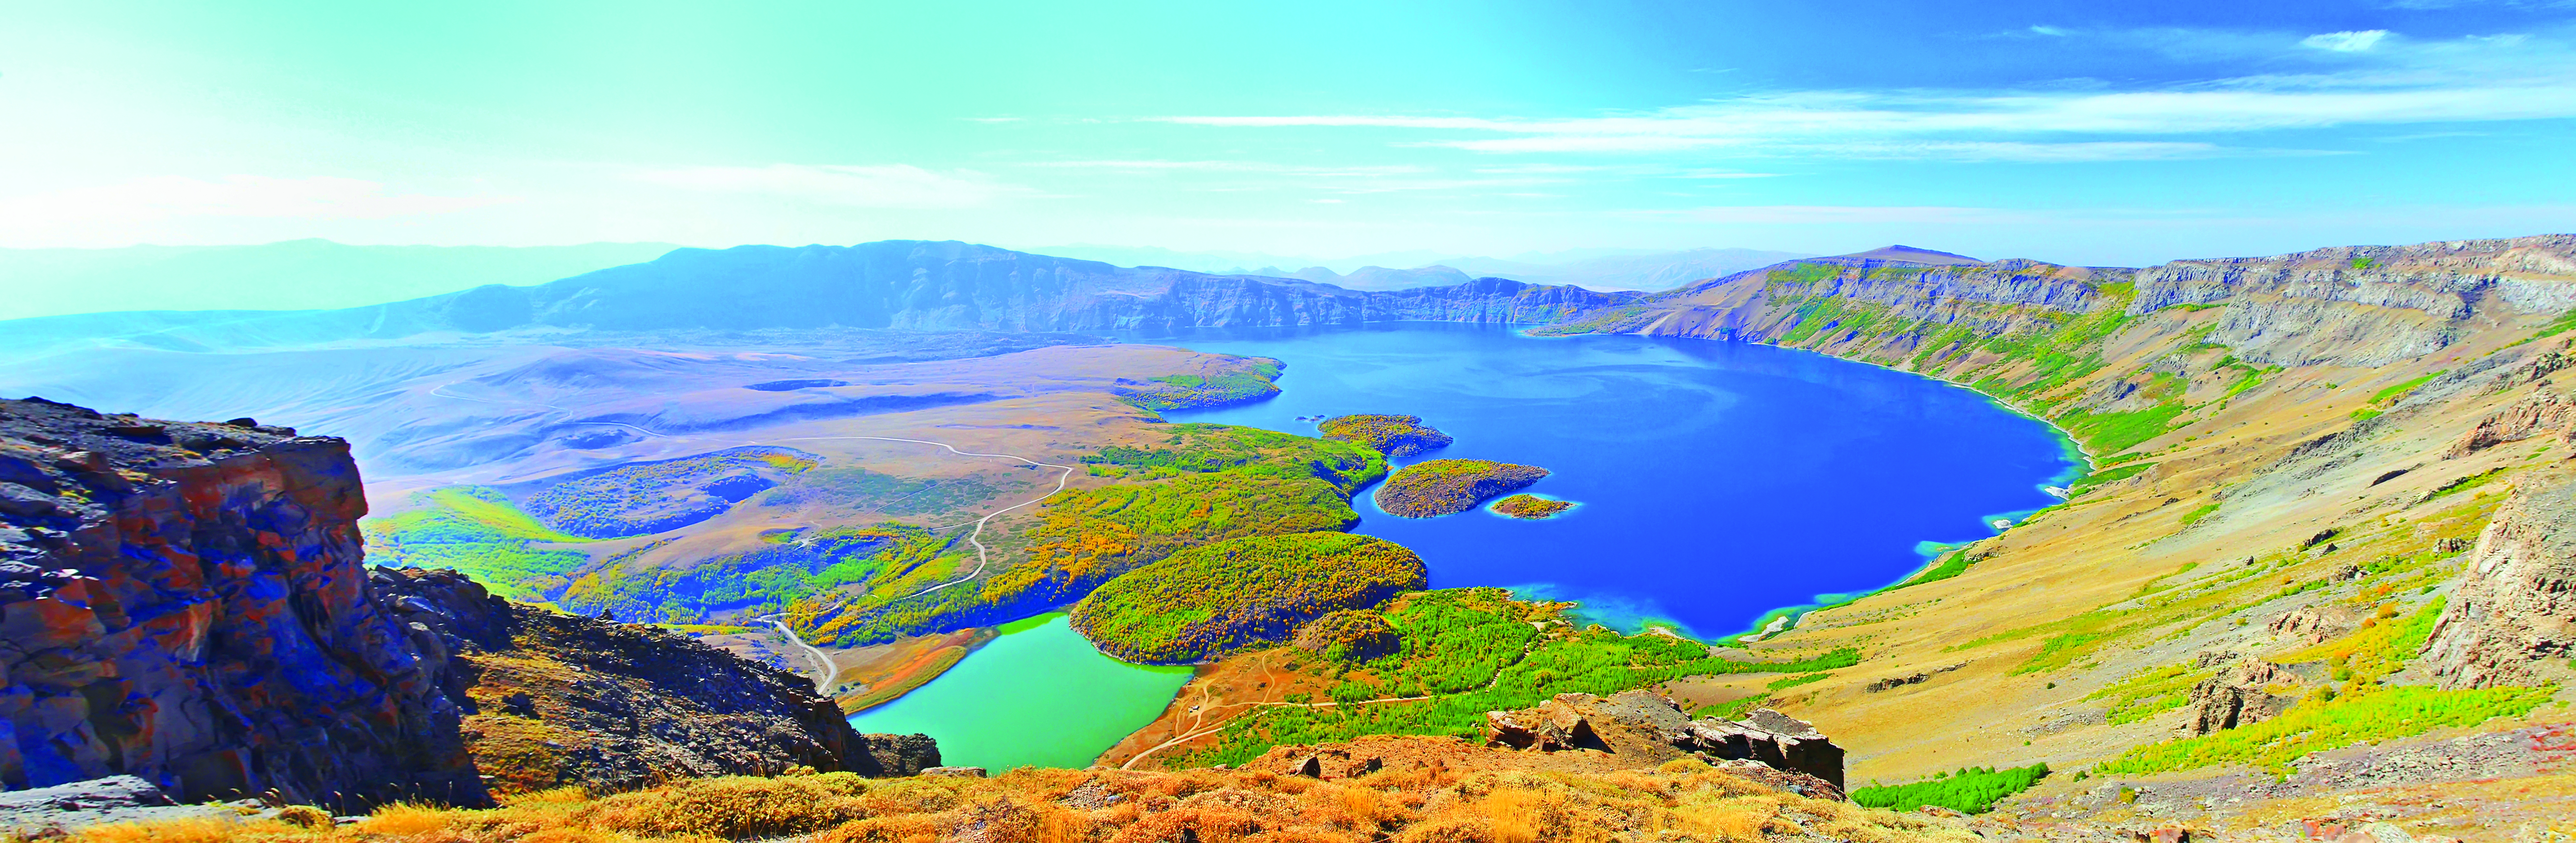 Büyük İskender’in Cenneti: Nemrut Krater Gölü